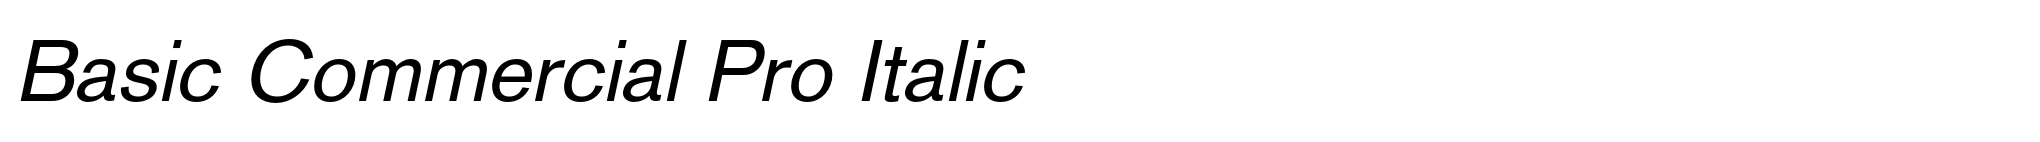 Basic Commercial Pro Italic image